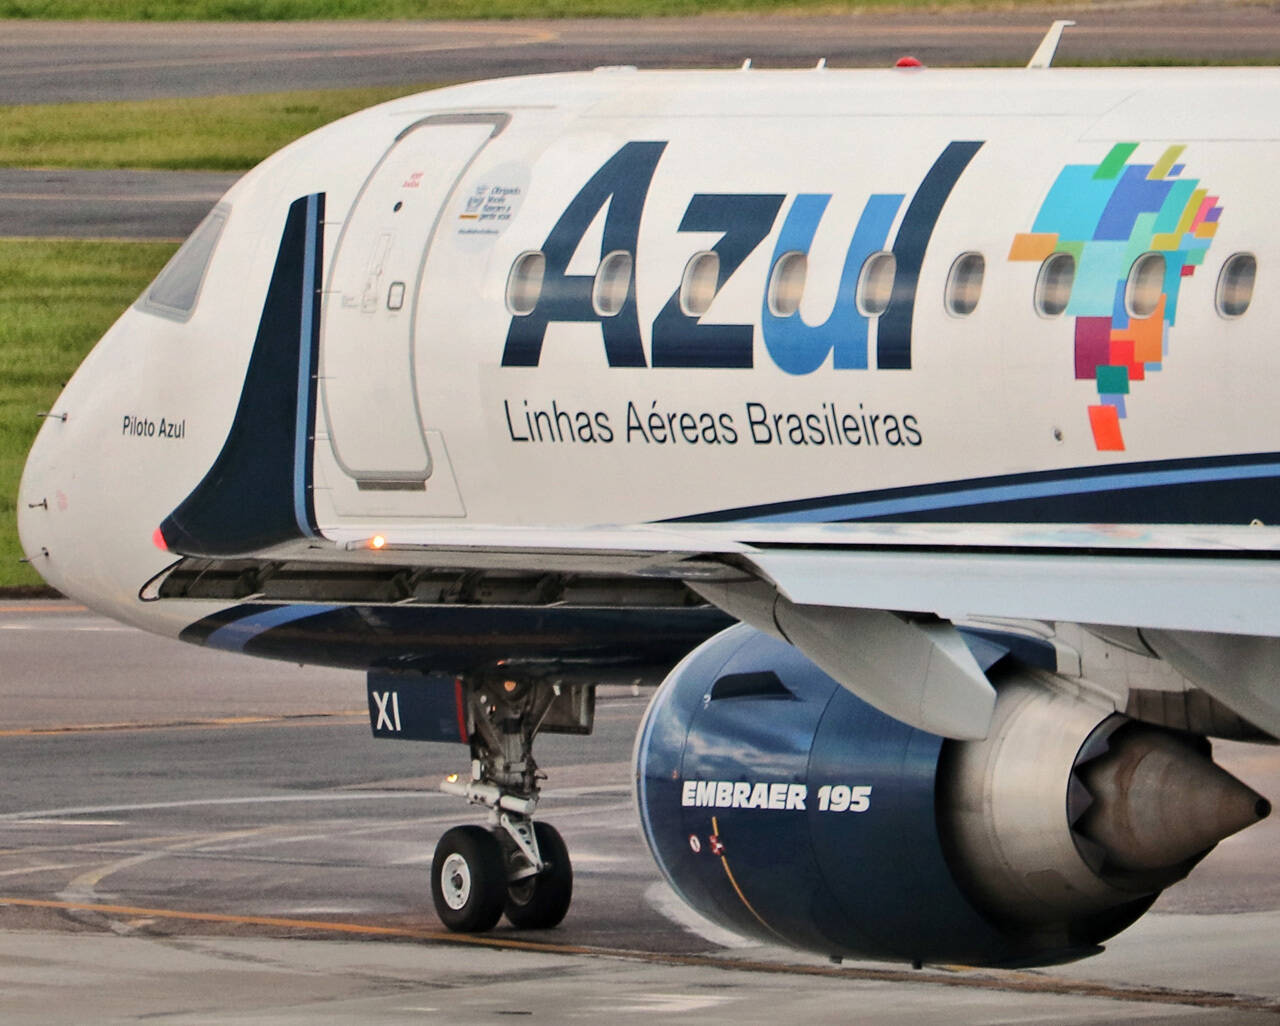 VOLL: expansão de voos da Azul beneficia viagens corporativas